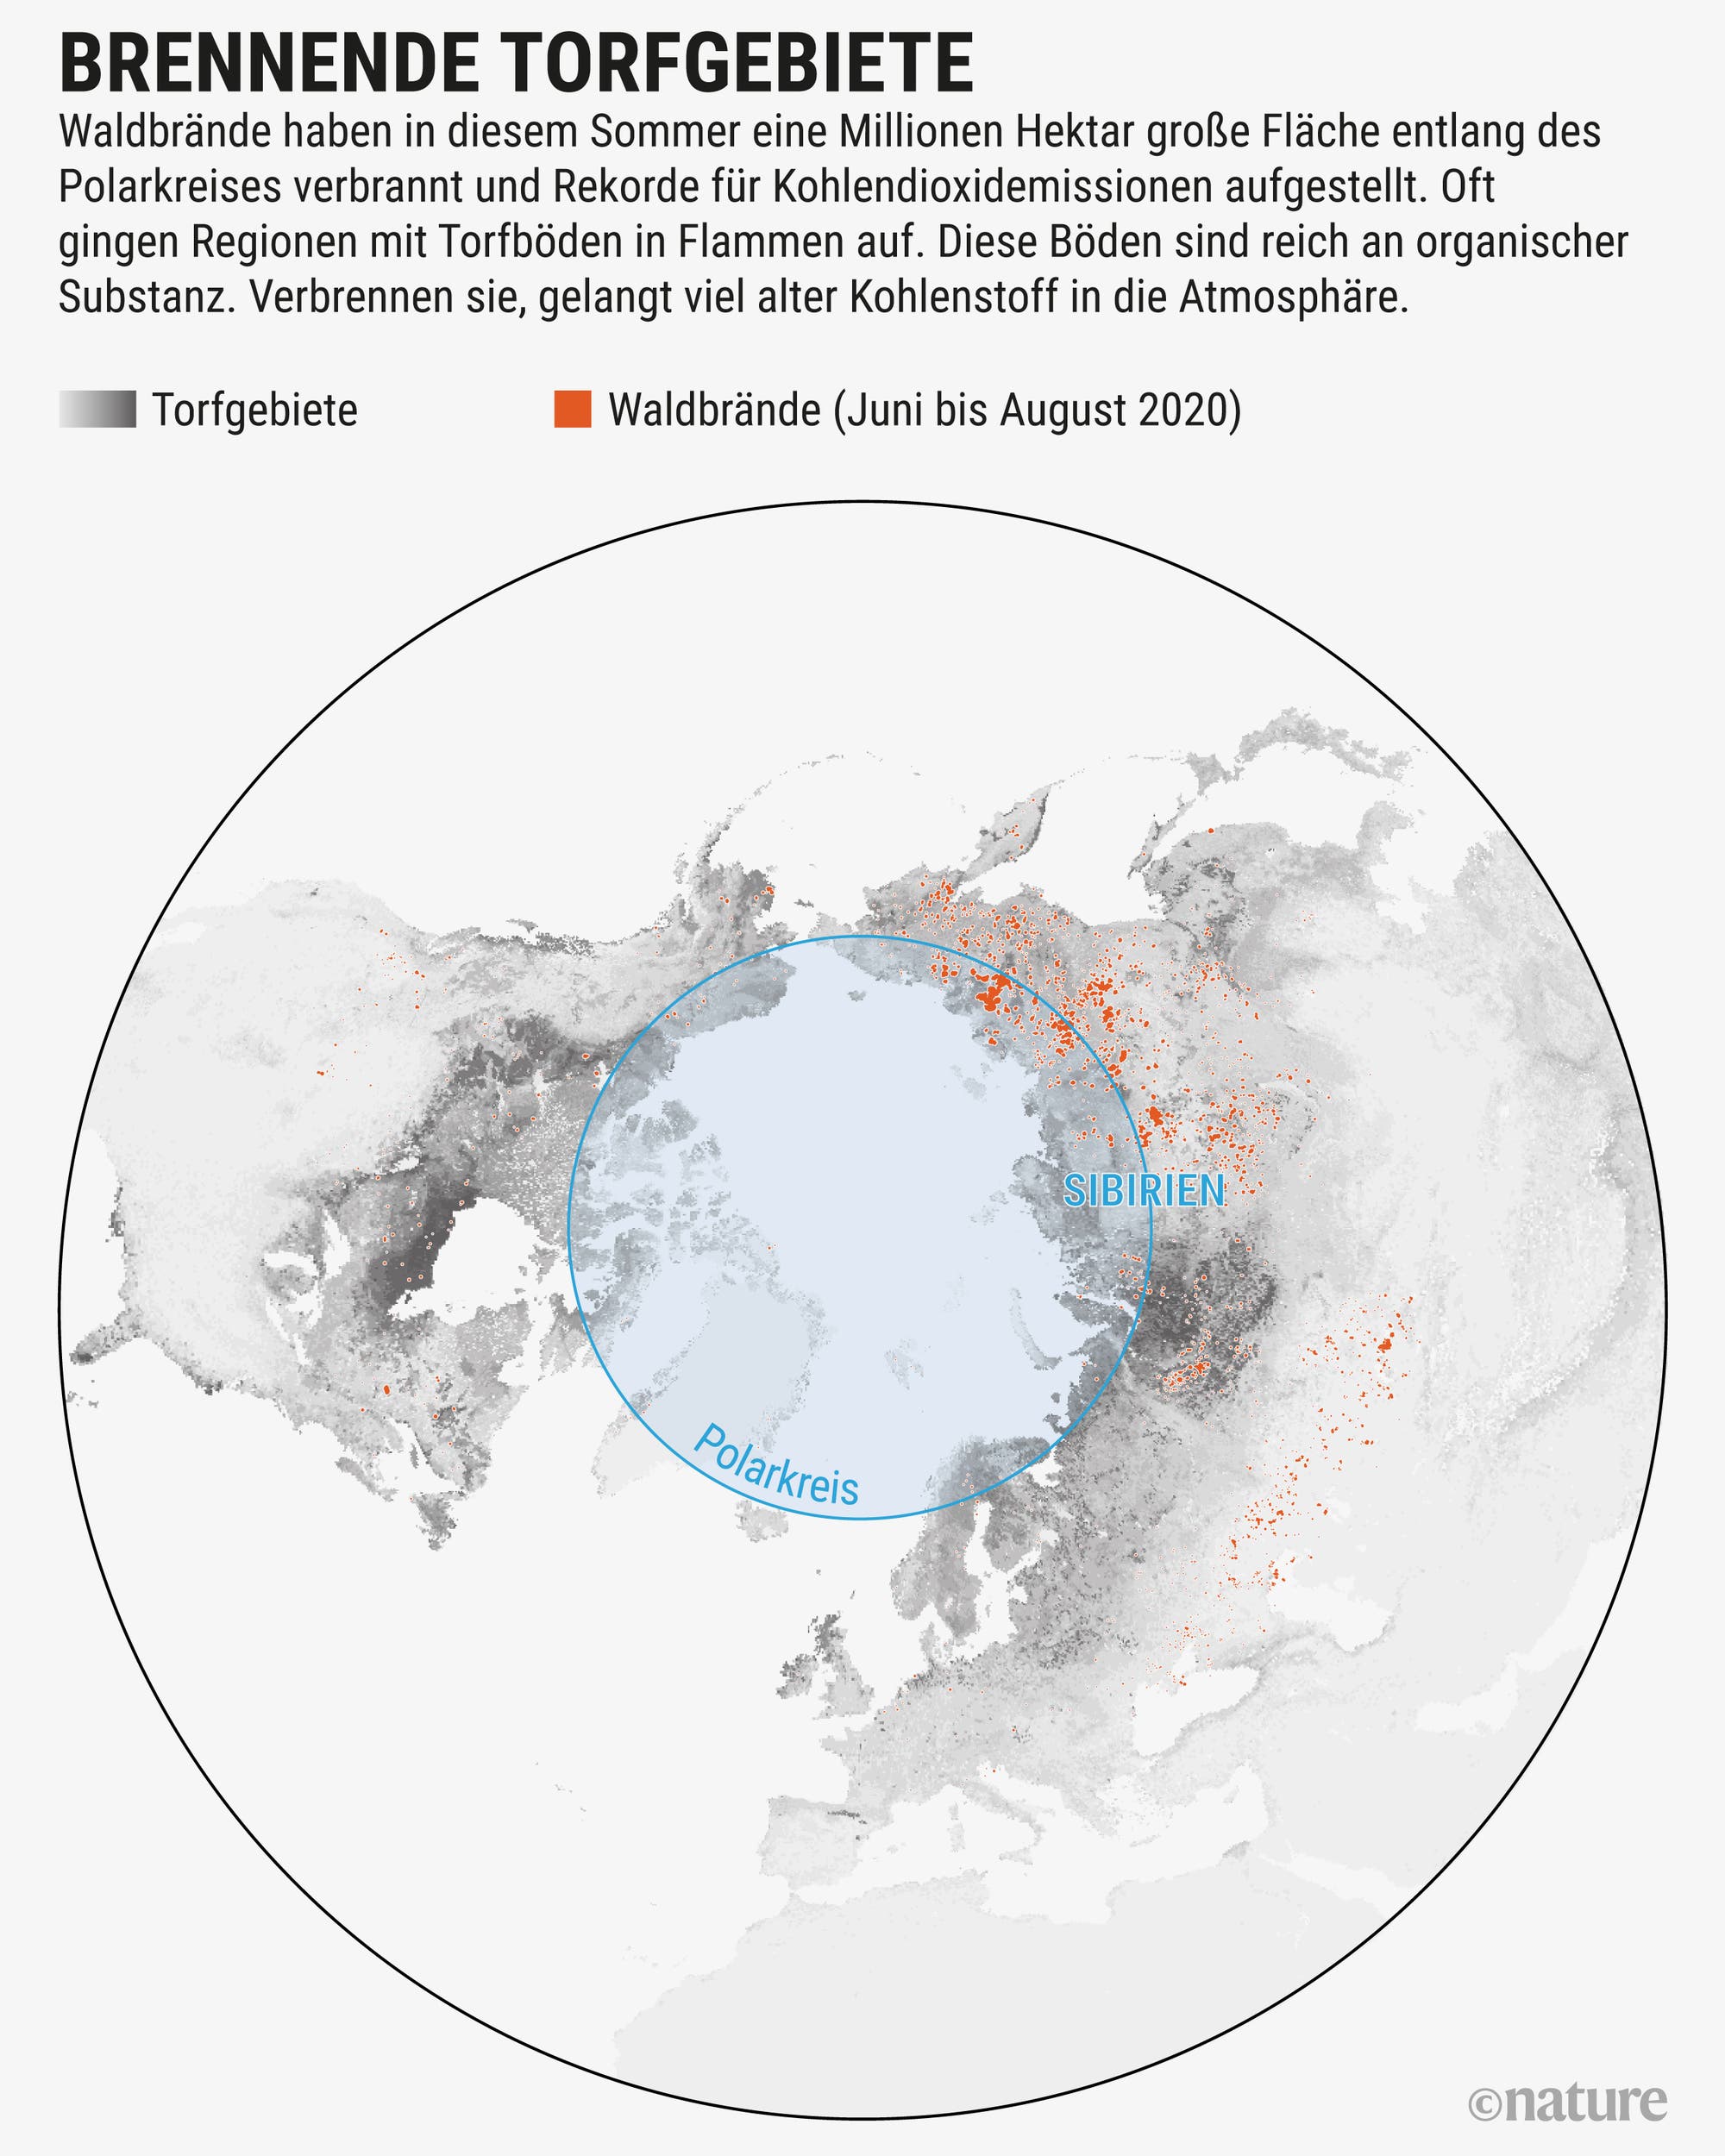 Waldbrände haben in diesem Sommer eine Millionen Hektar große Fläche entlang des Polarkreises verbrannt.